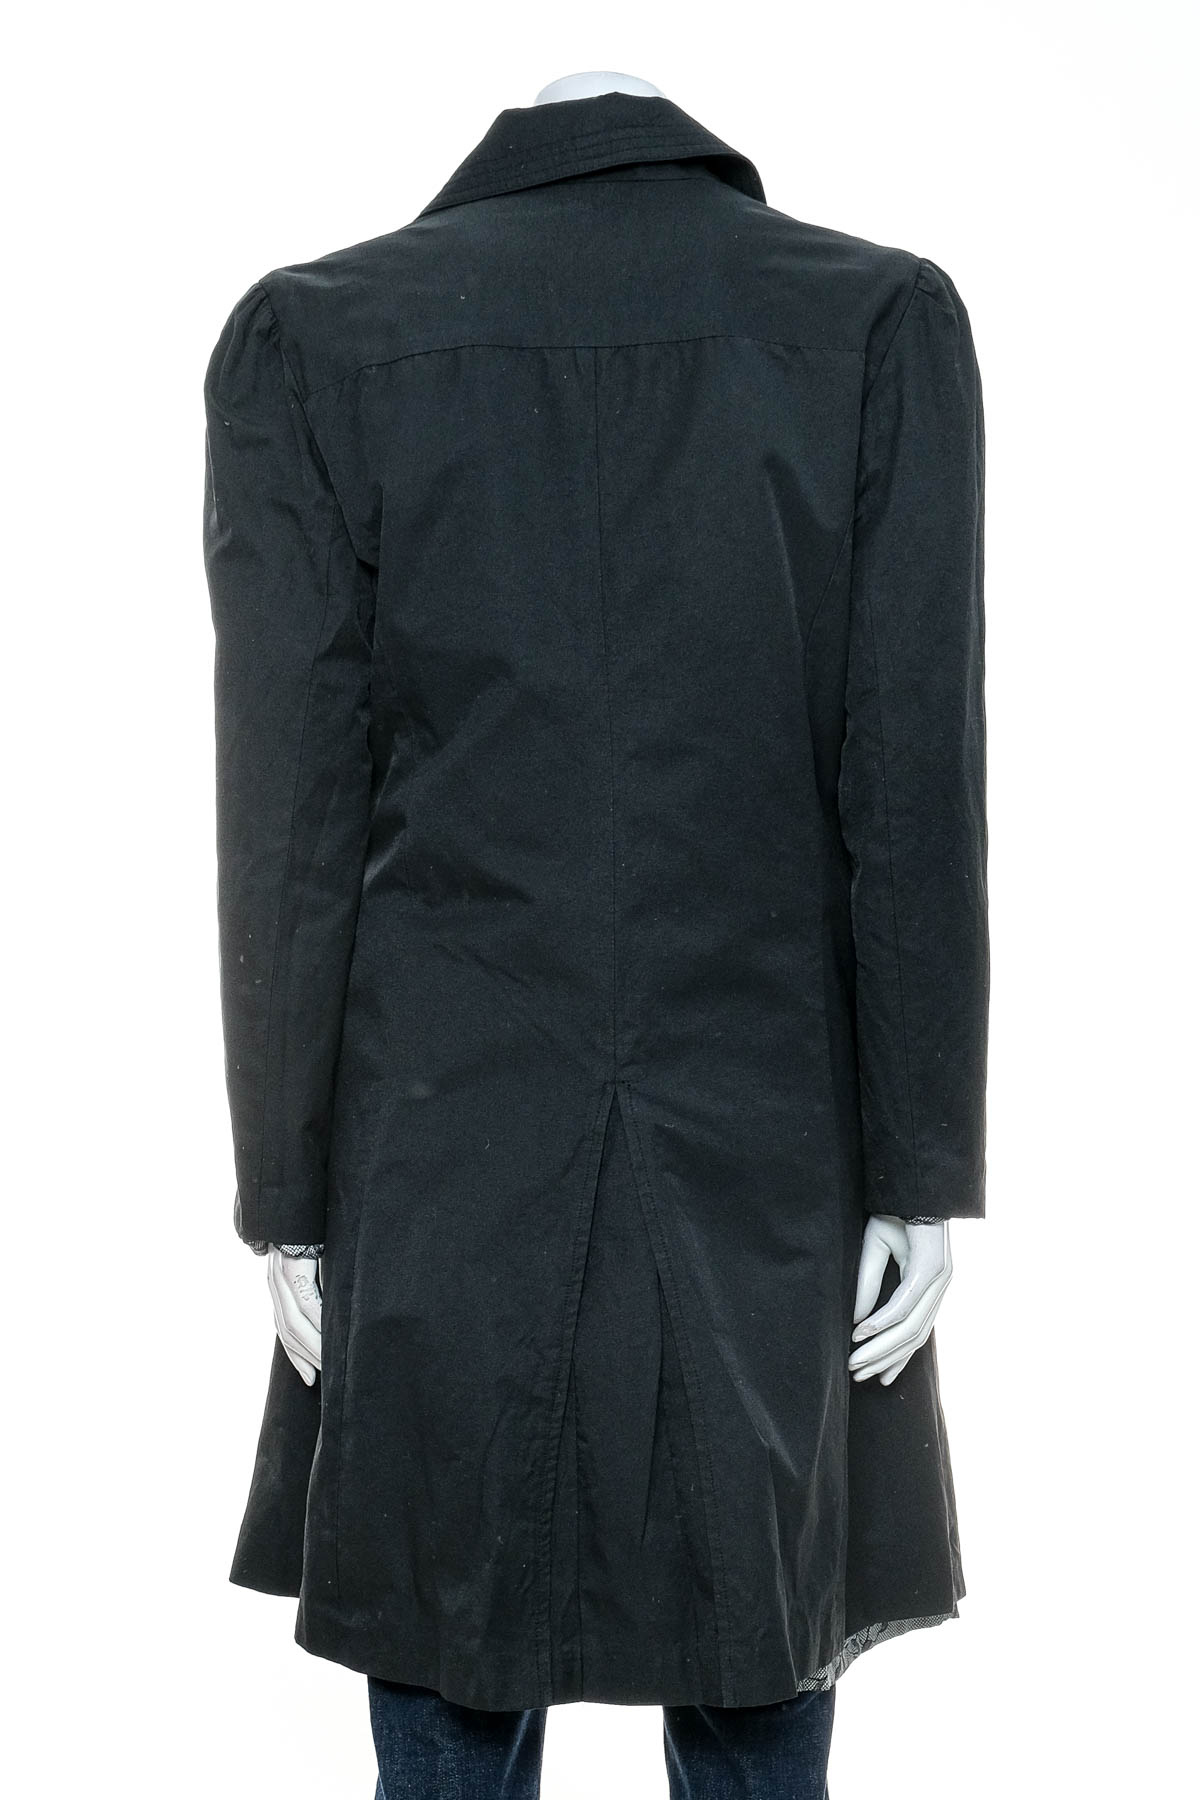 Γυναικείο παλτό - Behnaz Sarafpour for Target - 1